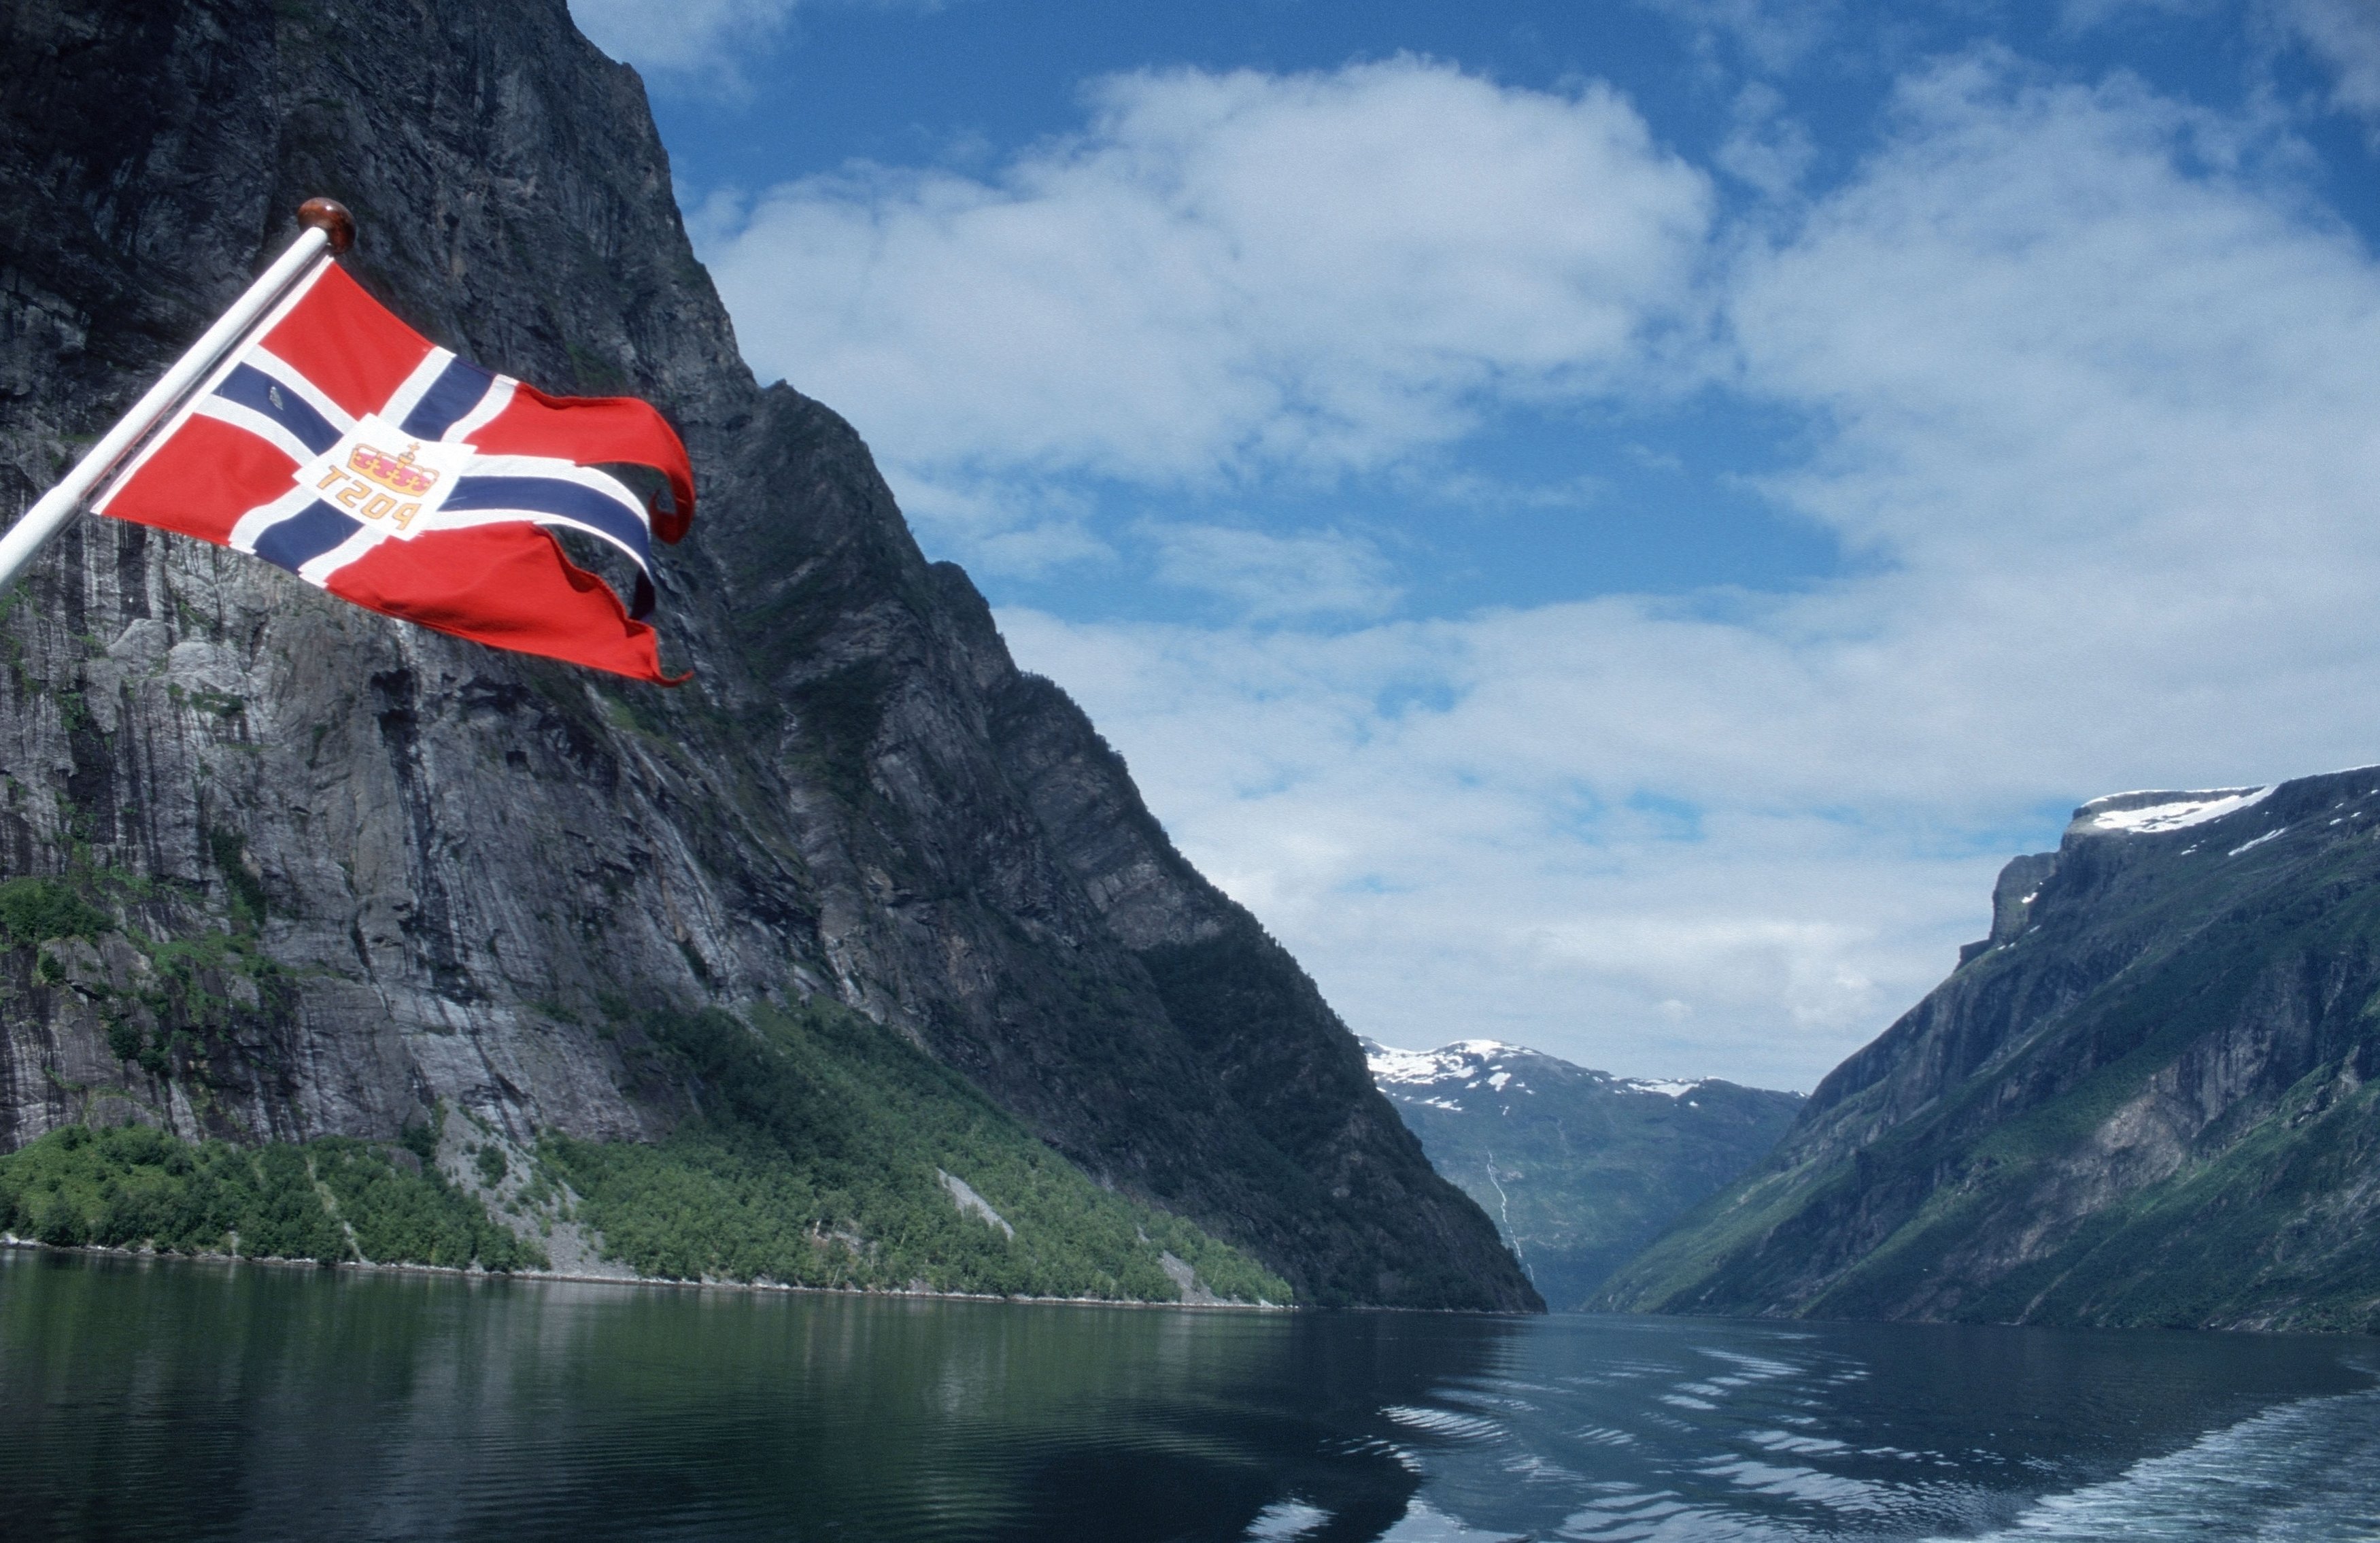 Норвегия 7. Норвегия Врадал. Хеннингсвер, Норвегия. Ковид в Норвегии. Флаг Норвегии и горы.